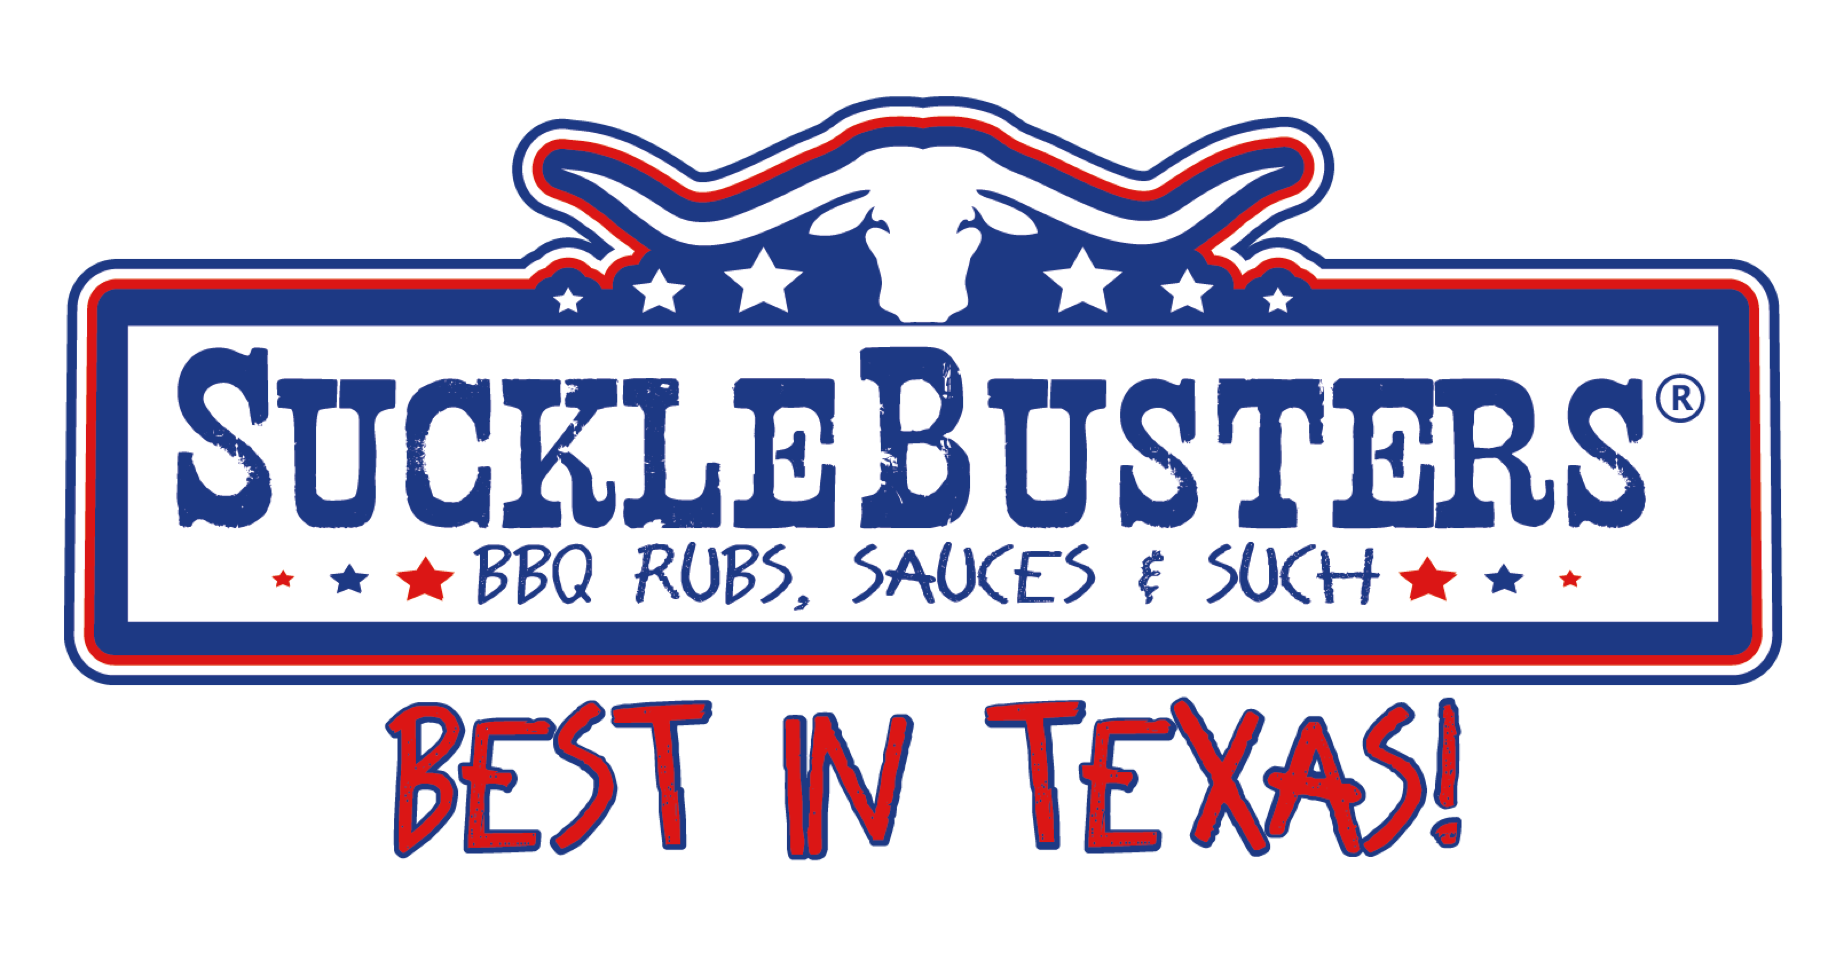 Texas Gewürze, Sucklebusters, Rubs, Sauces,